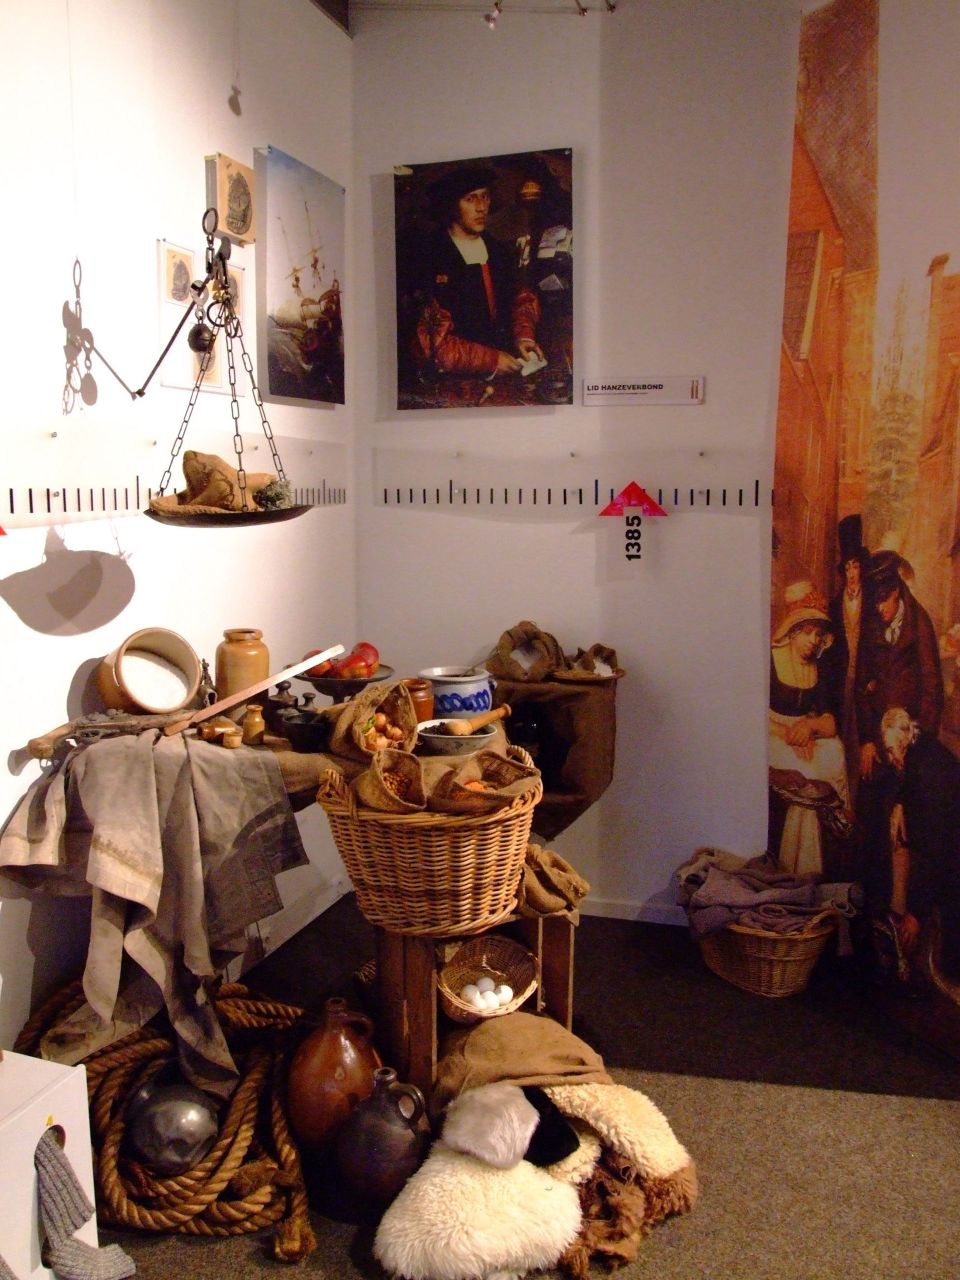 Binnen in het museum it ponthus in stavoren. Kamer met handelswaren, met op de achtergrond de tijdlijn.